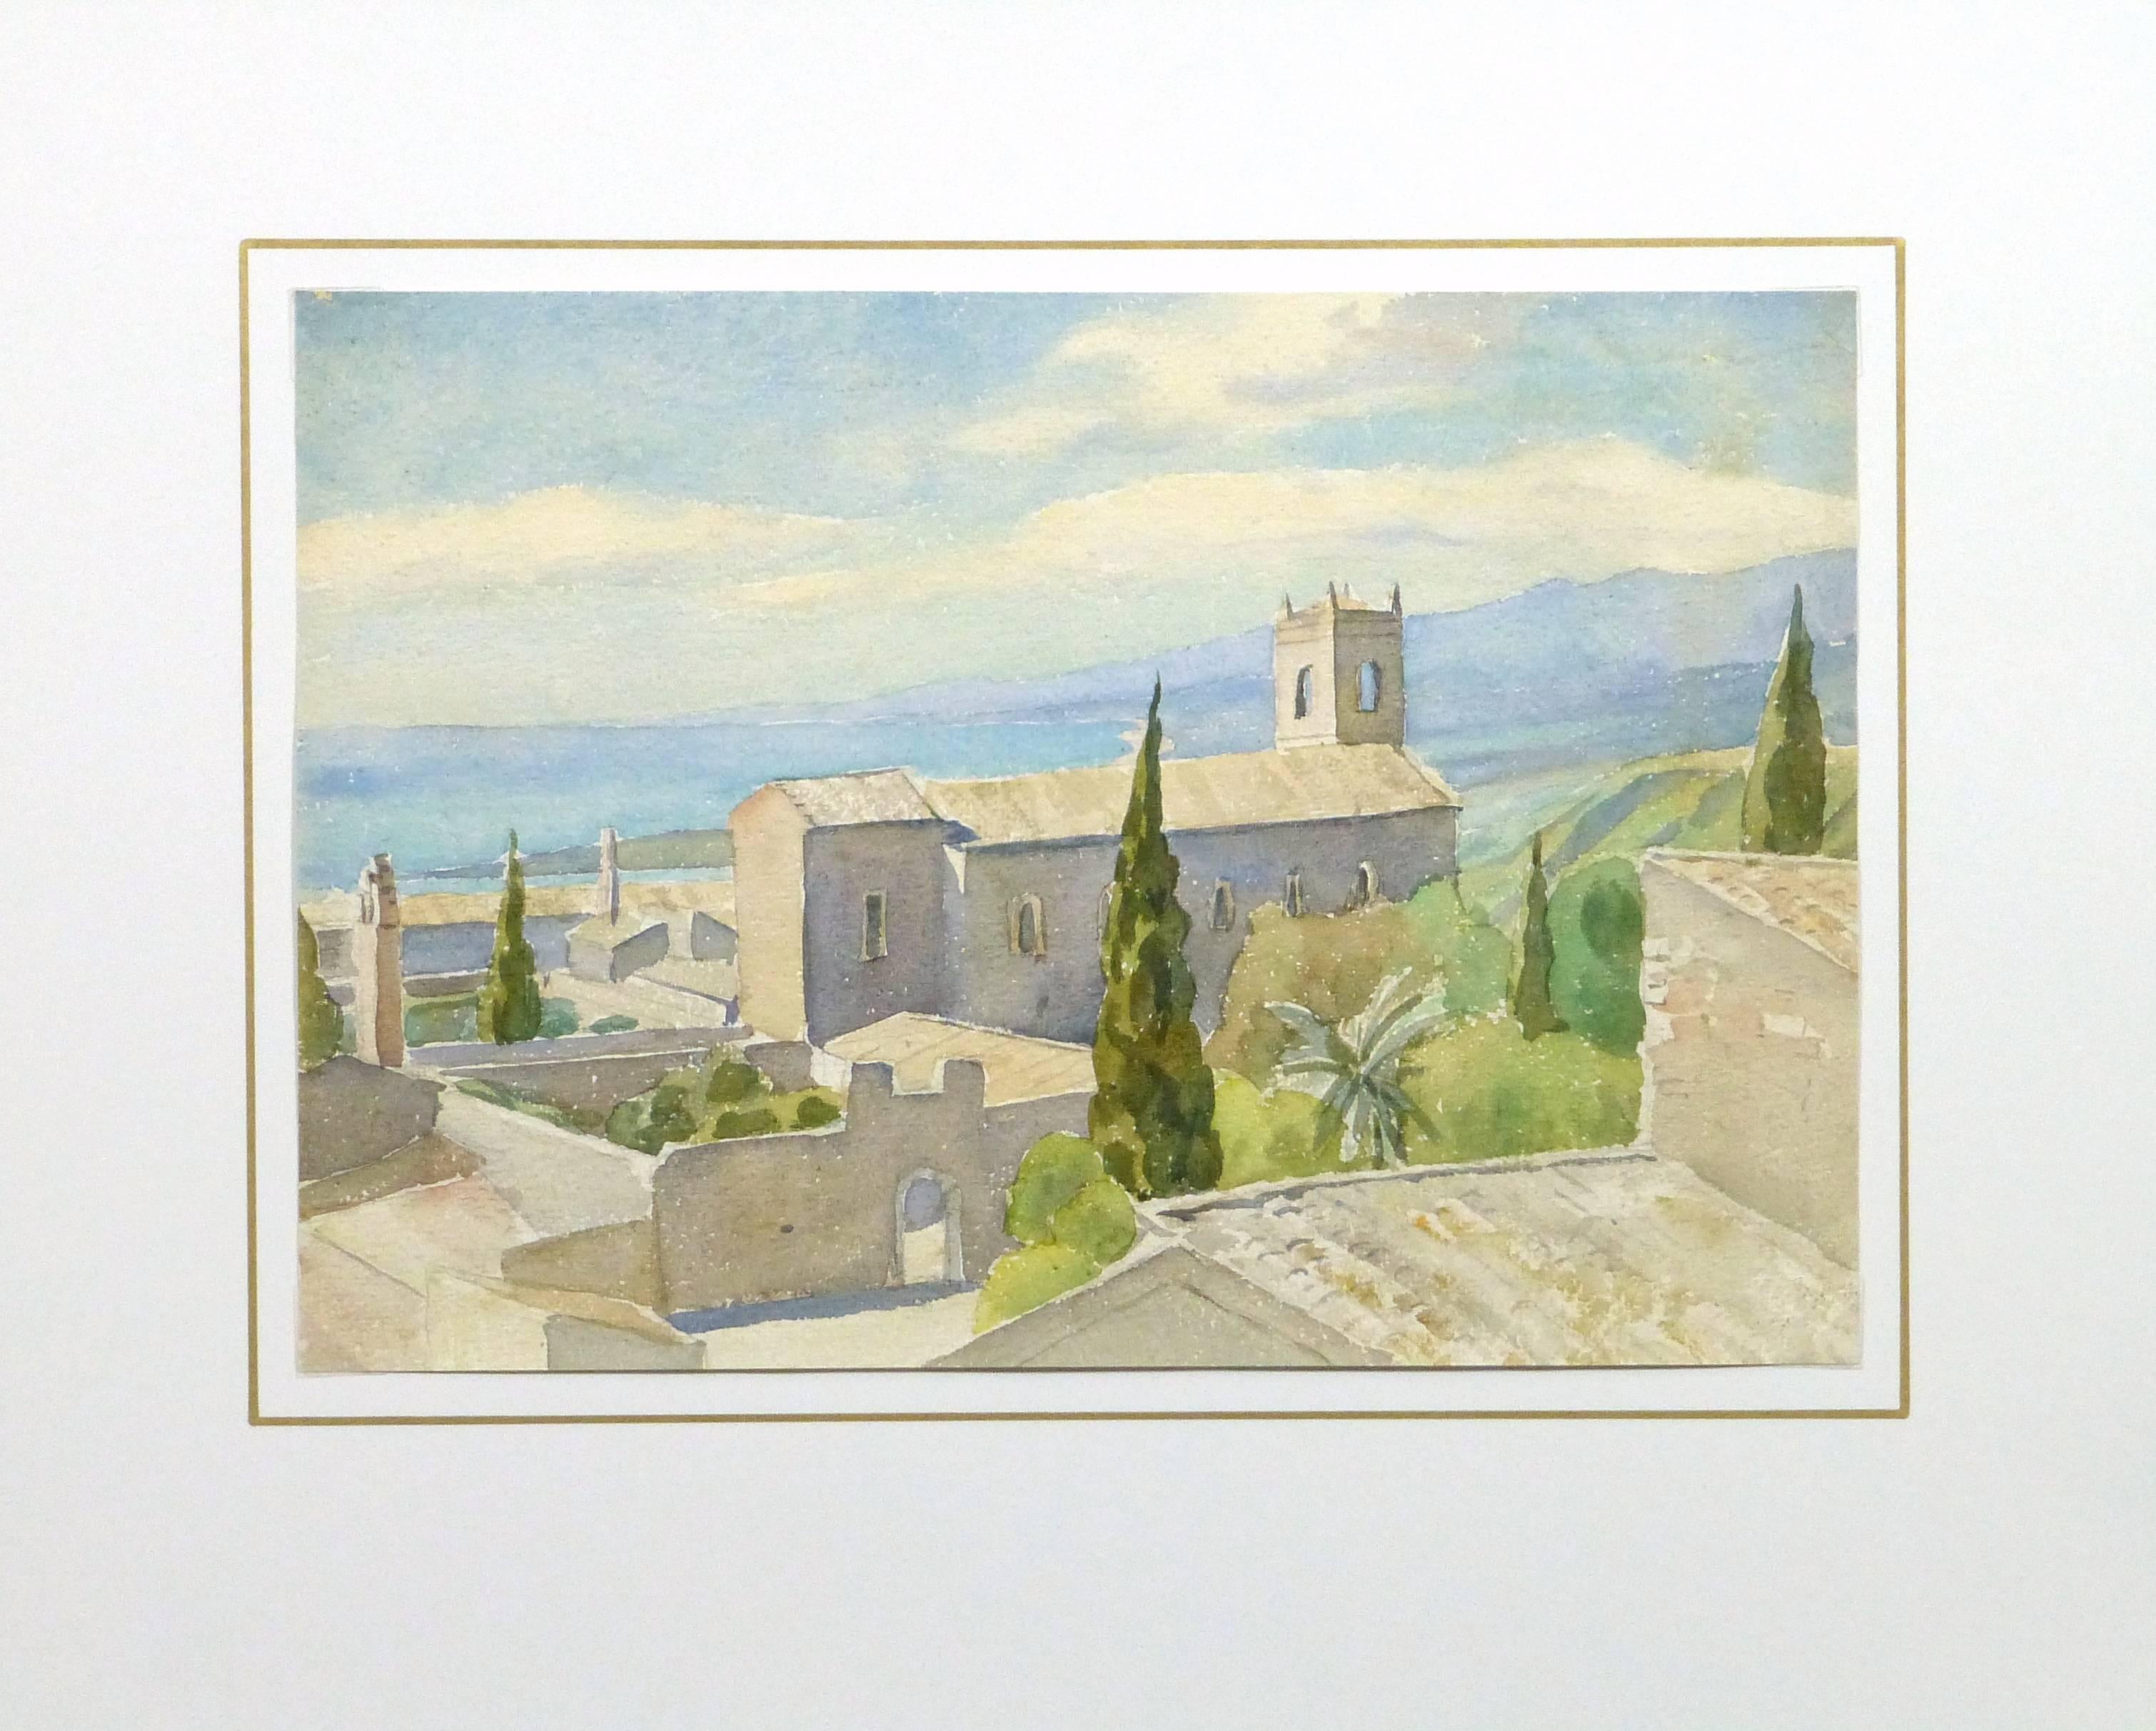 Exceptionnelle aquarelle représentant une scène ensoleillée de la côte invitante de la Toscane, vers 1930. Non signée.

Œuvre d'art originale et unique sur papier, présentée sur un tapis blanc avec une bordure dorée. Le tapis s'adapte à un cadre de